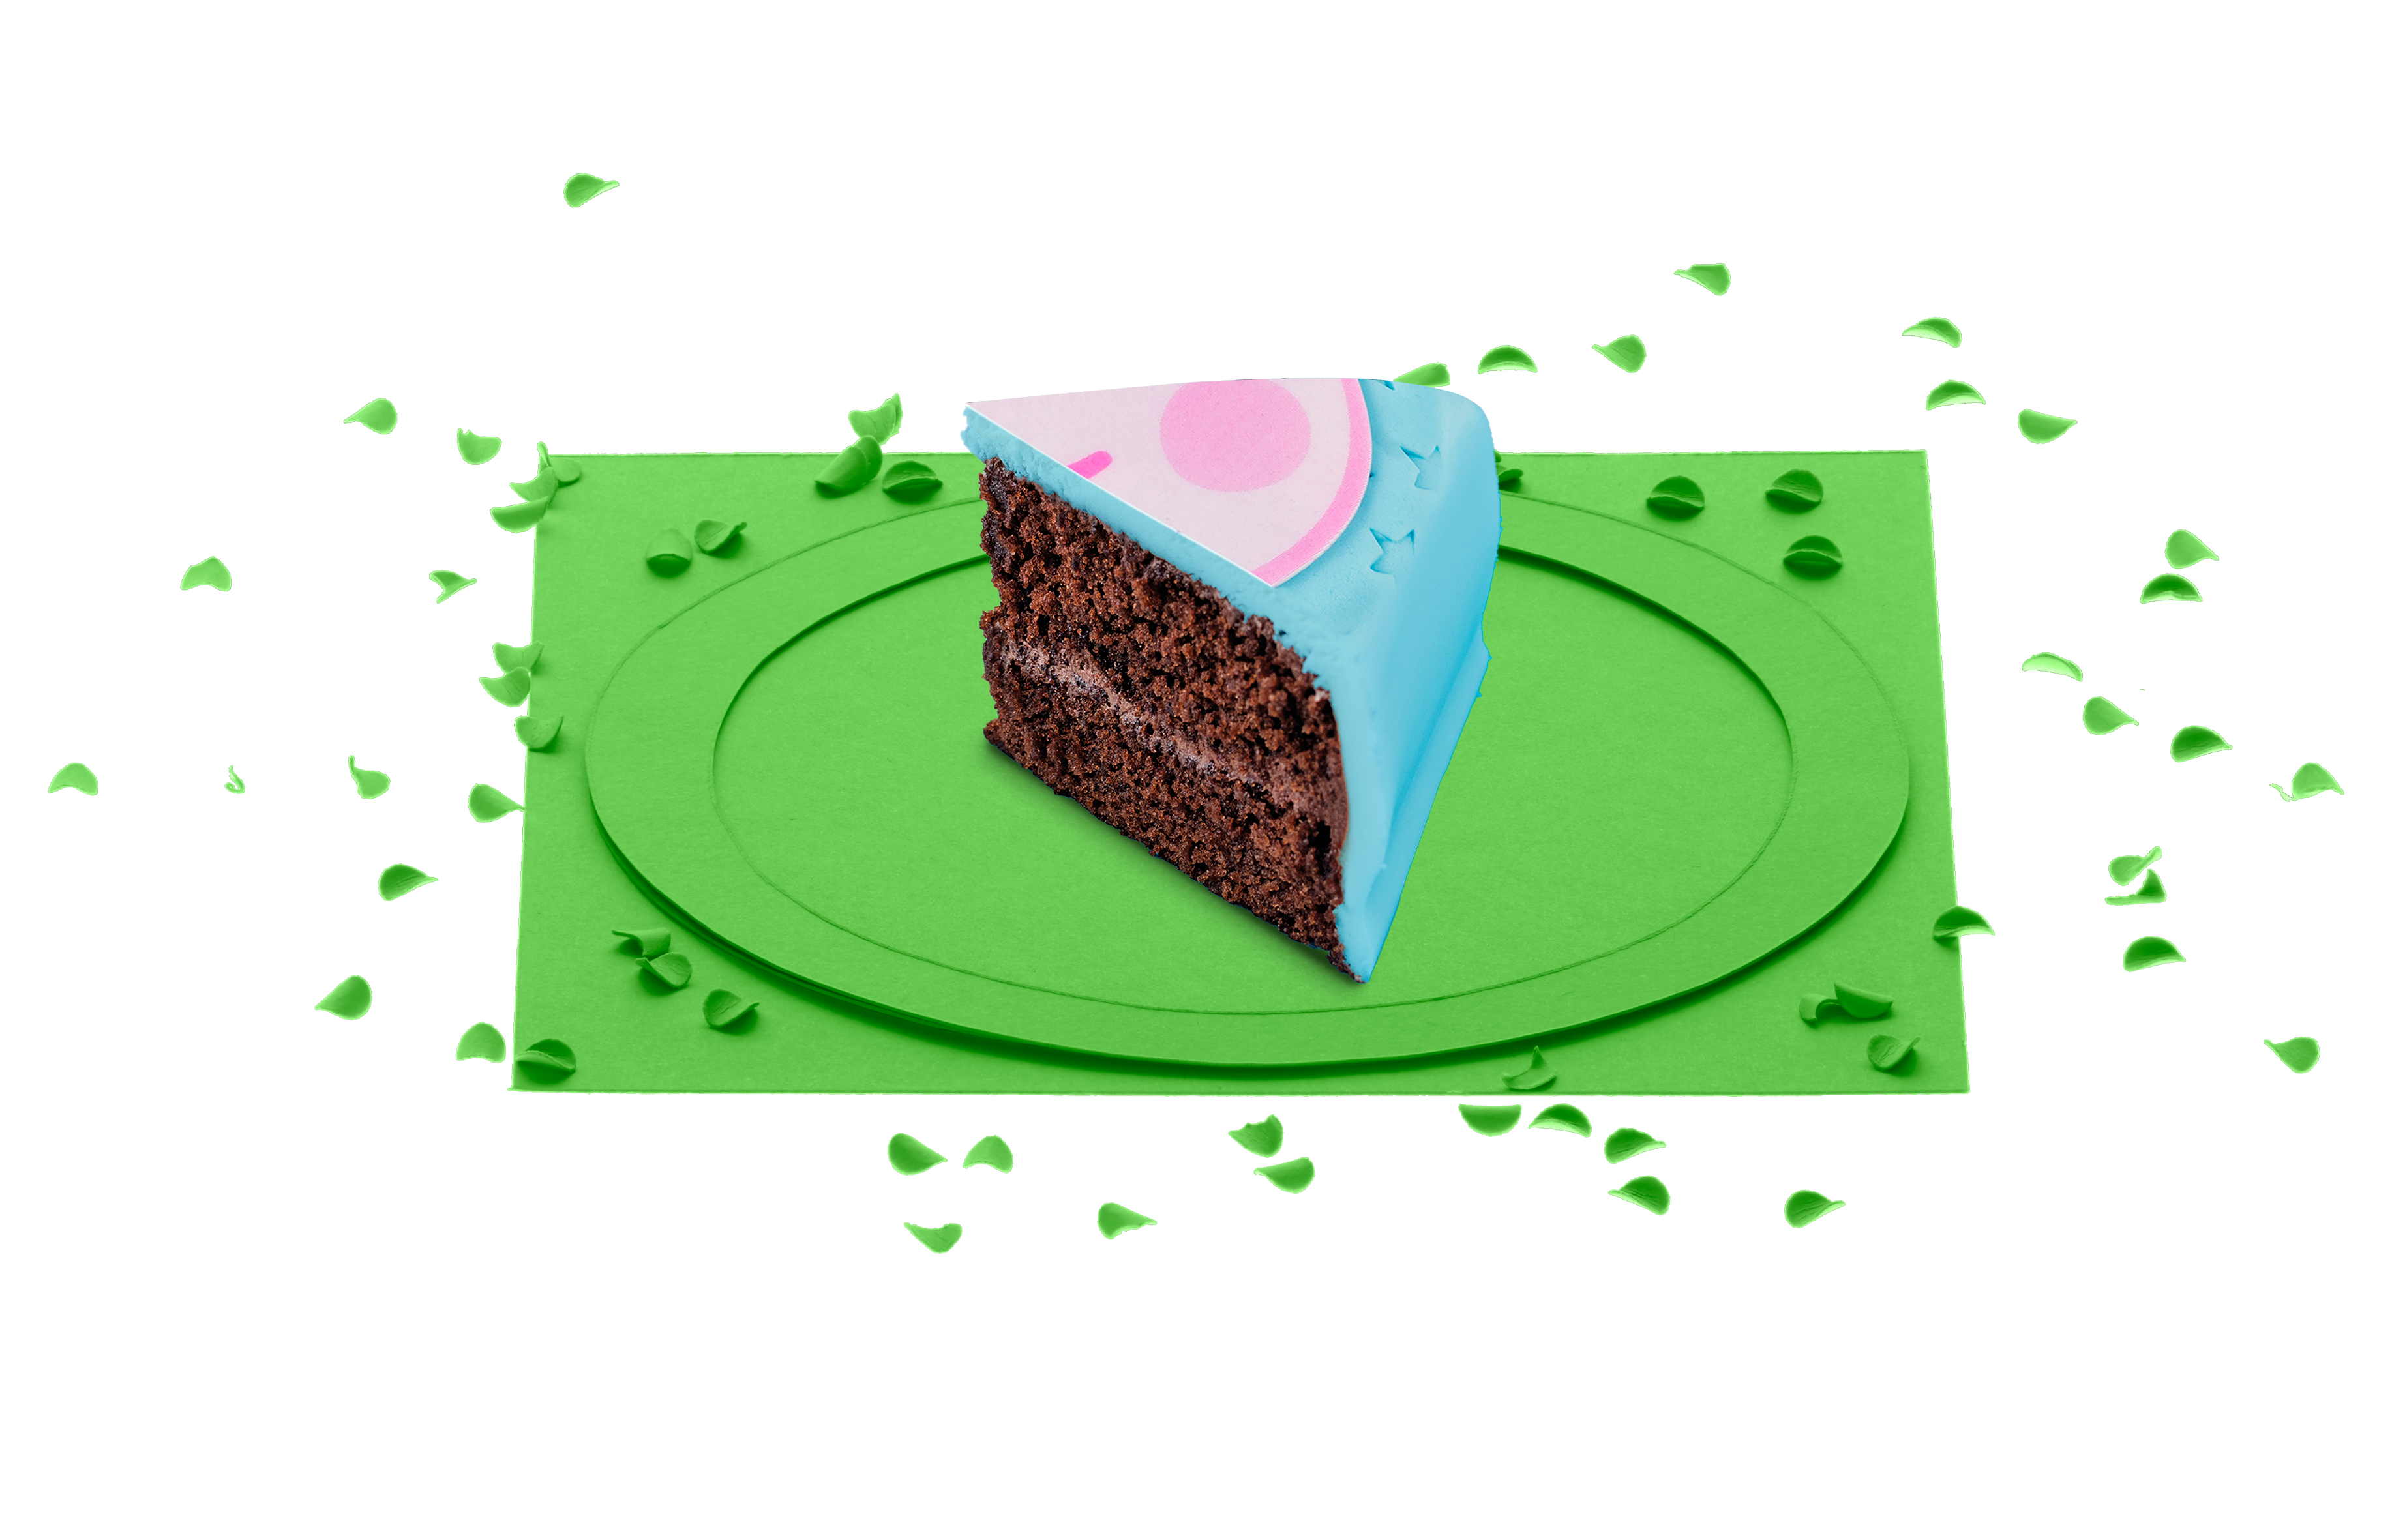 Décoration de gâteau pour enfants d'âge préscolaire Peppa Pig